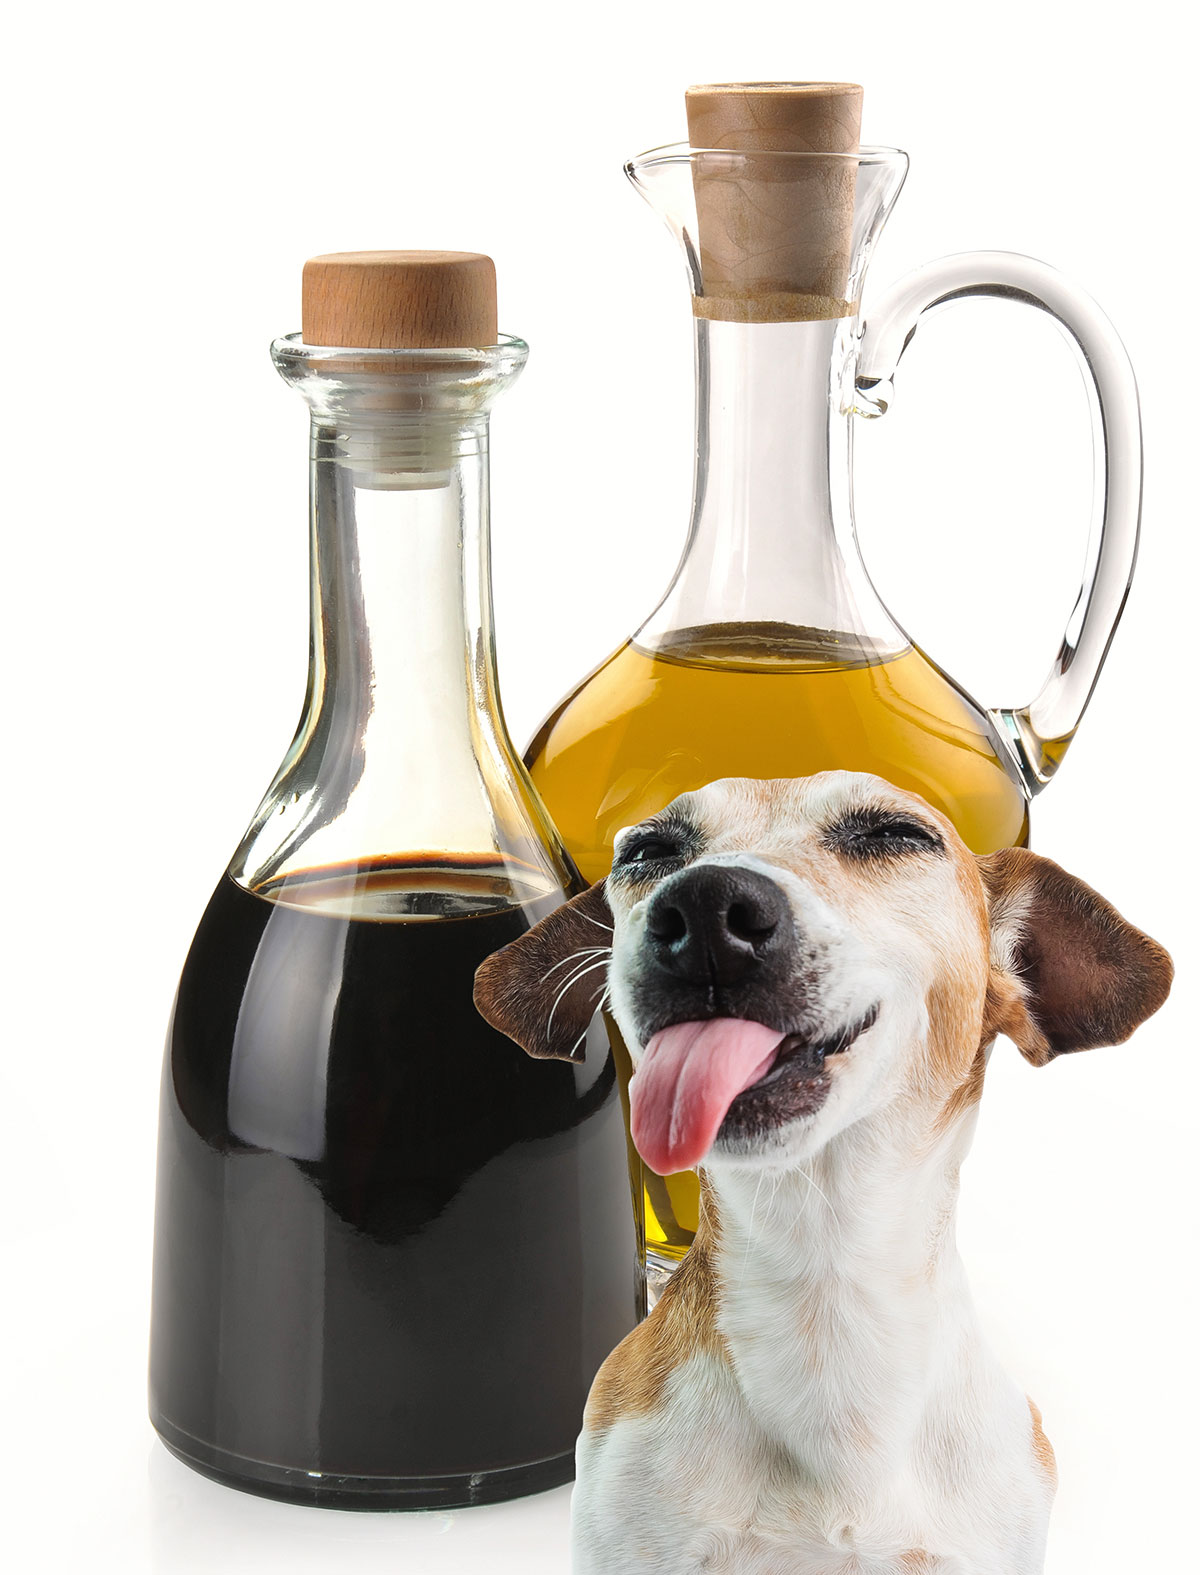 Dog licking bottle of vinegar.